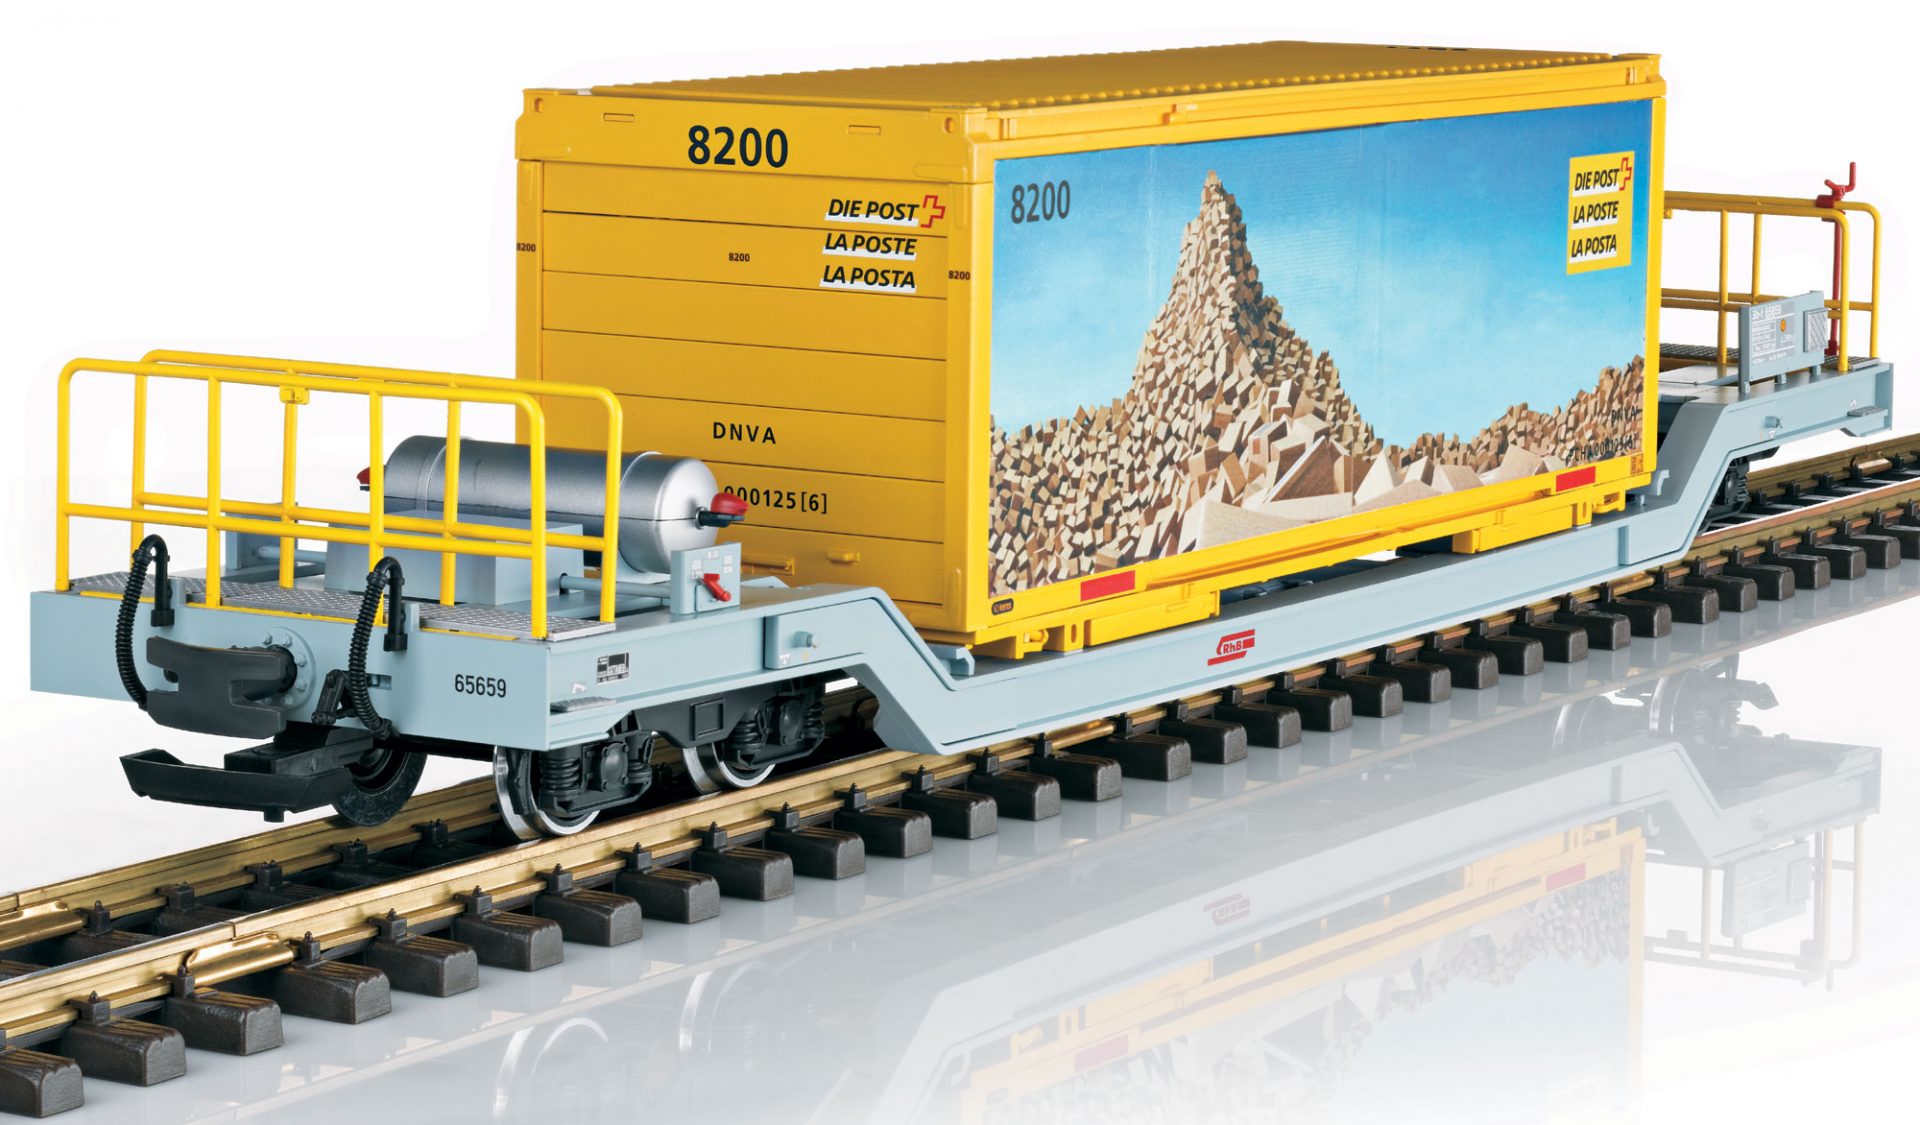 IIm G LGB 45925 schraeg RhB Containerwagen Sb-t 65659 Postcontainer_Maerklin_1 21